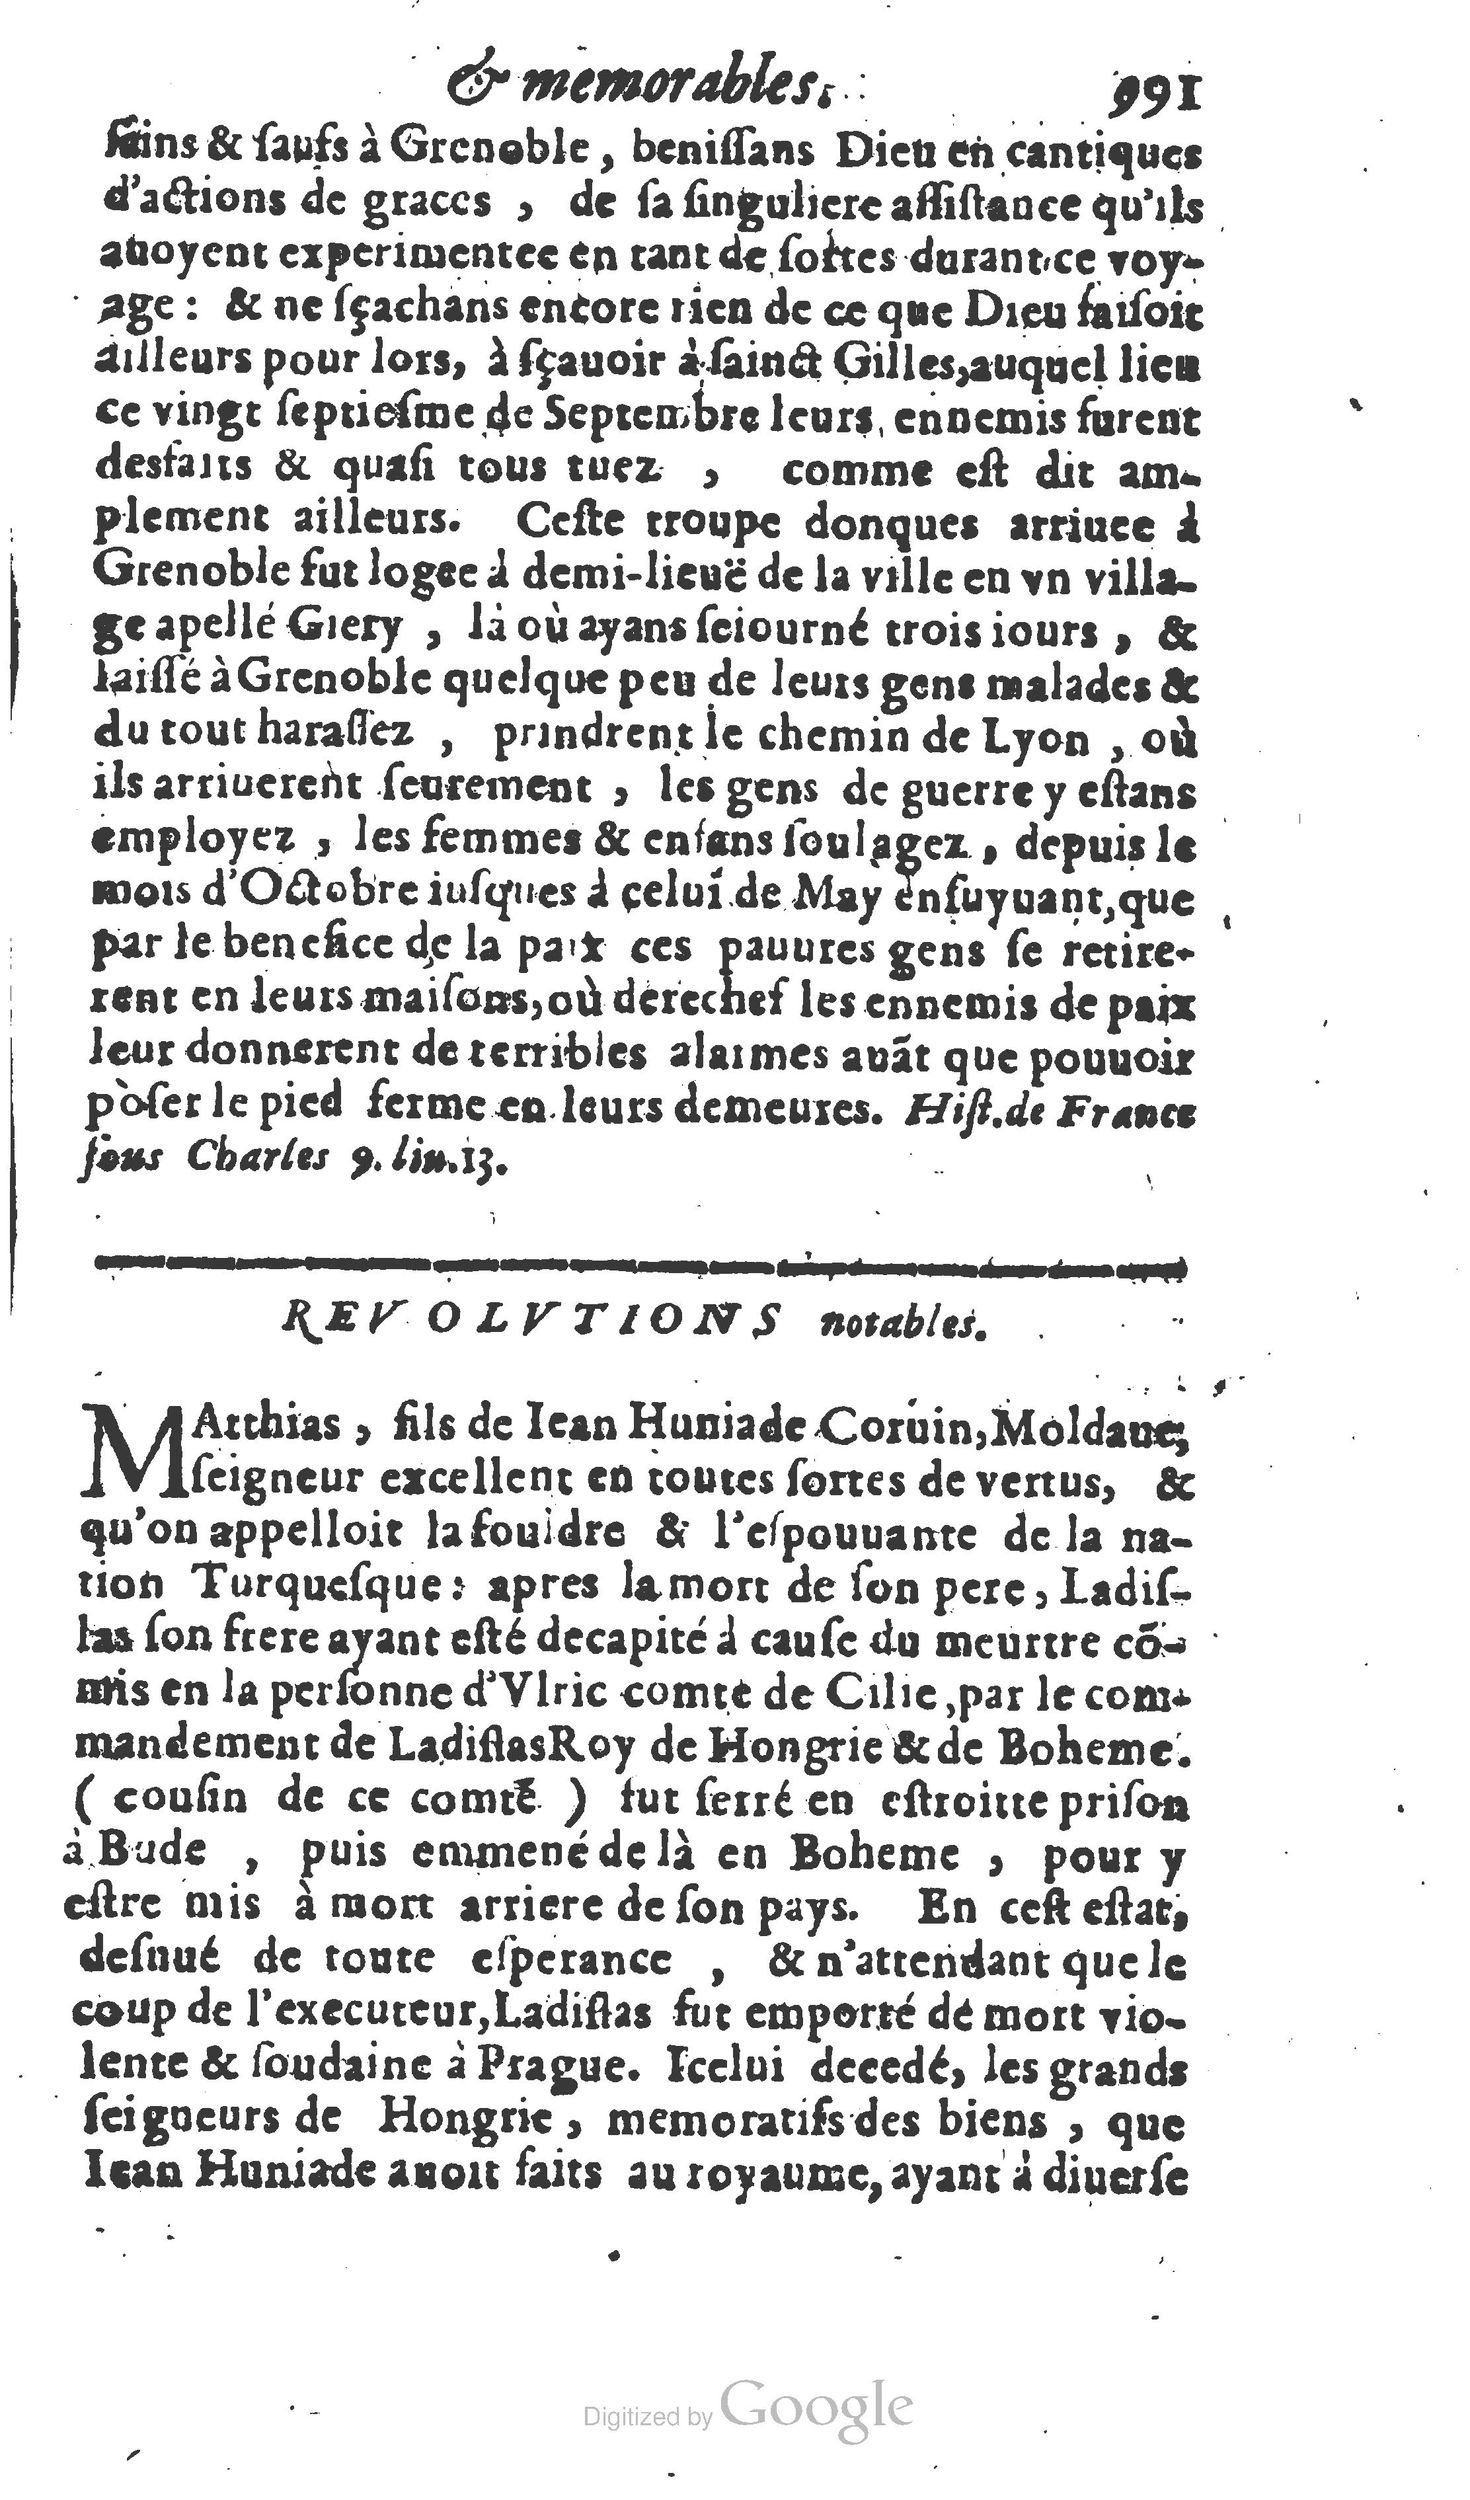 1610 Trésor d’histoires admirables et mémorables de nostre temps Marceau Princeton_Page_1012.jpg